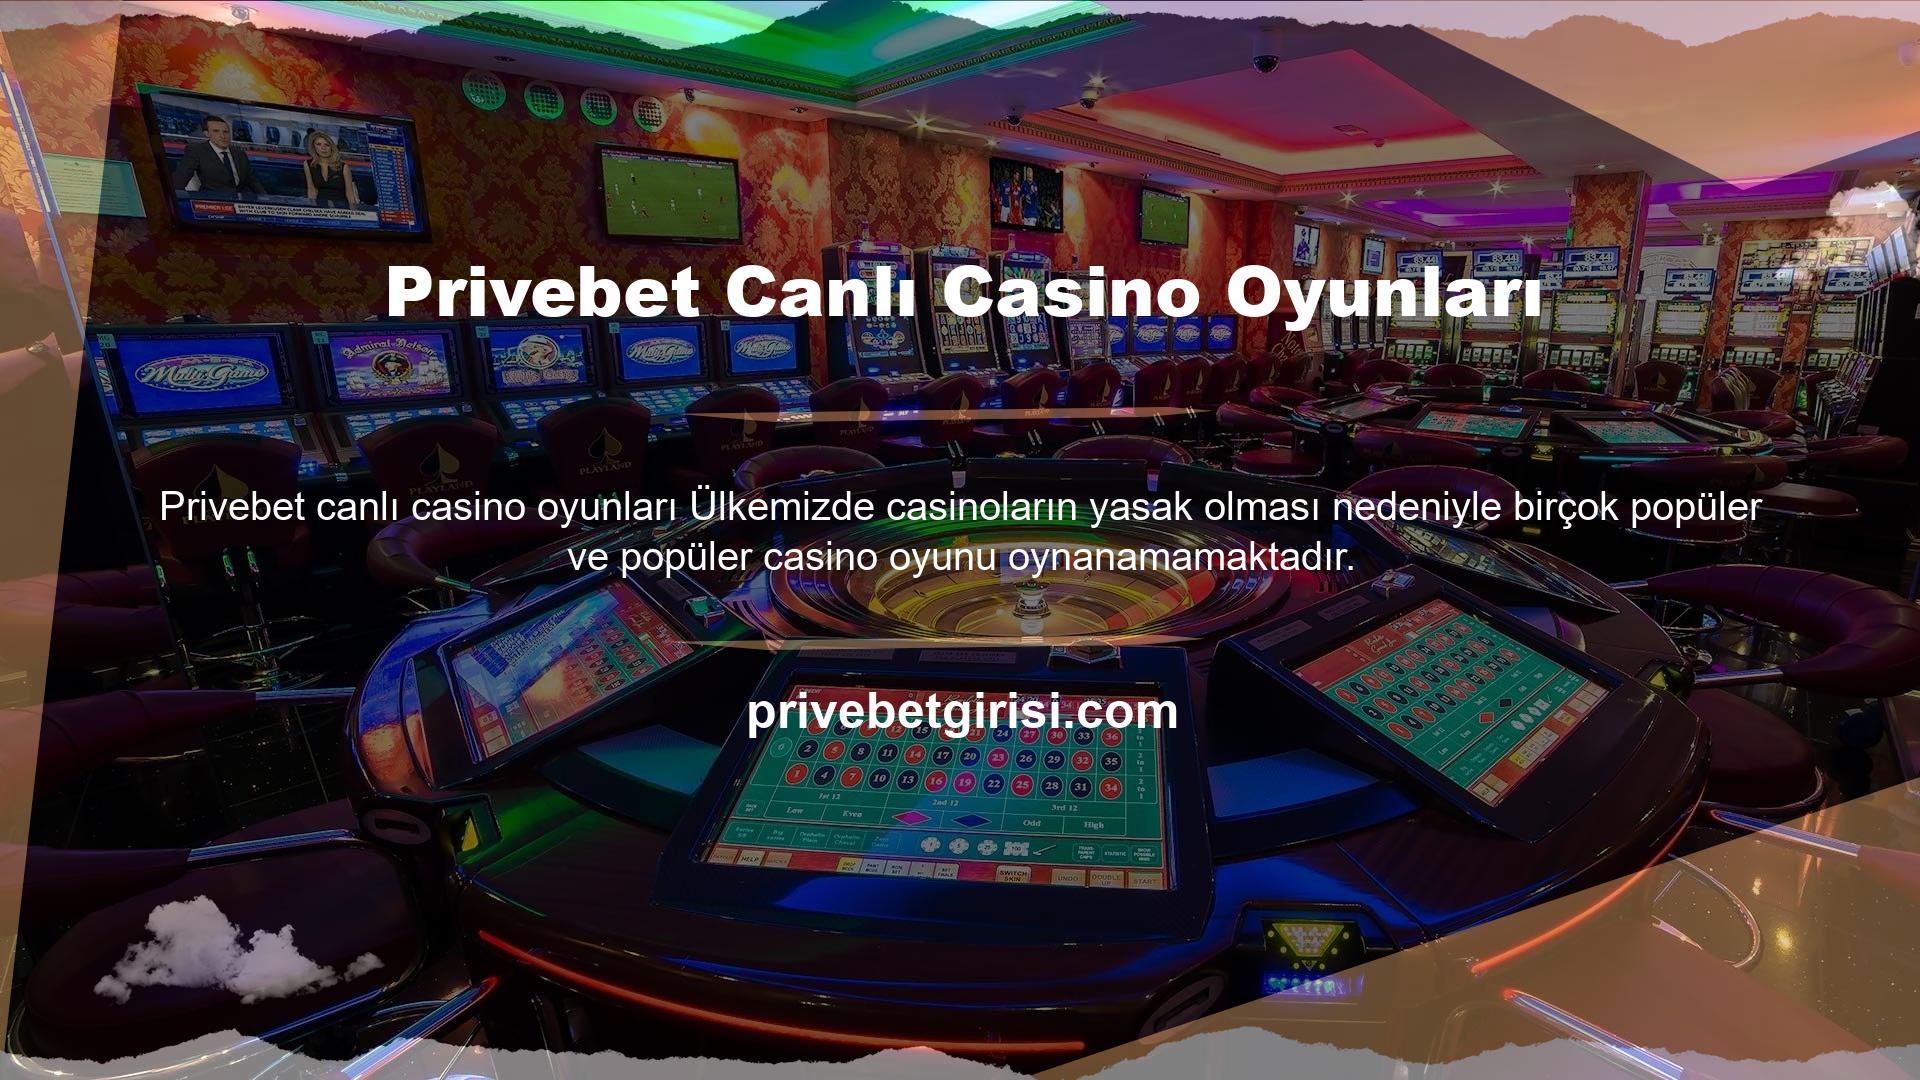 Kumar siteleri, üyelerine spor bahisleri ve casino oyunları sunmaktadır